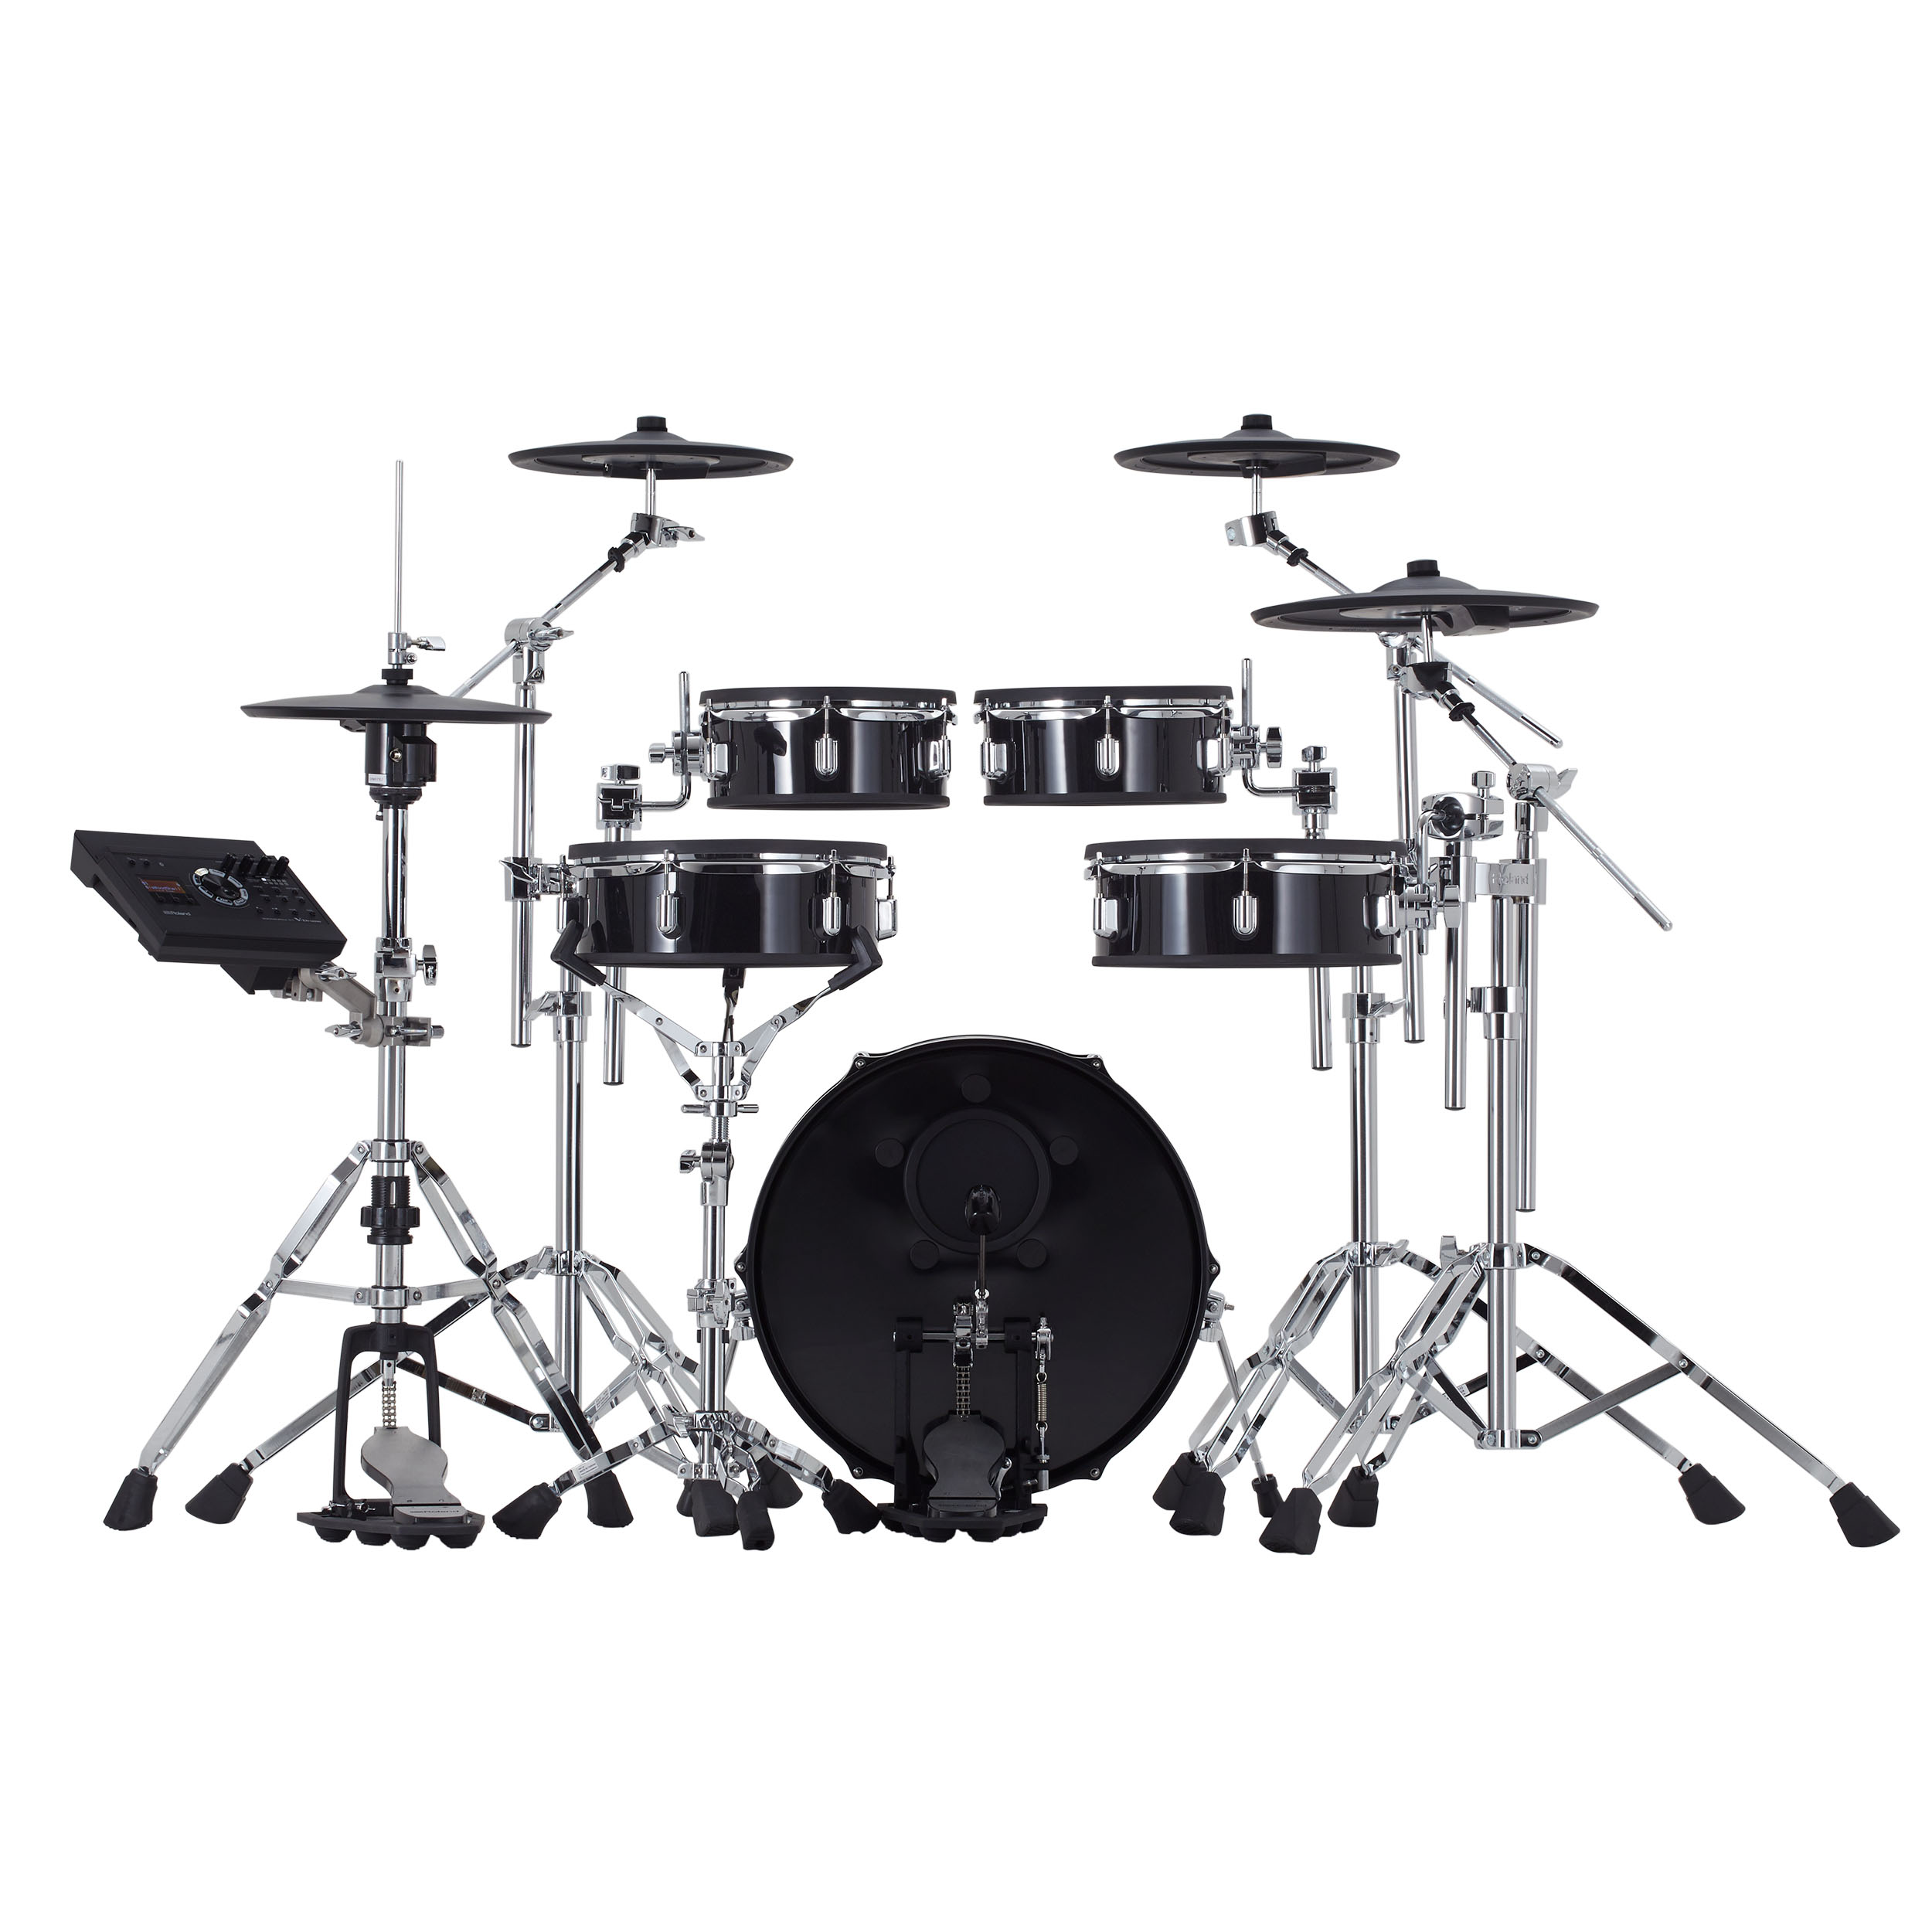 Roland Vad 307 V-drums Acoustic Design 5 Futs - Batería electrónica completa - Variation 1